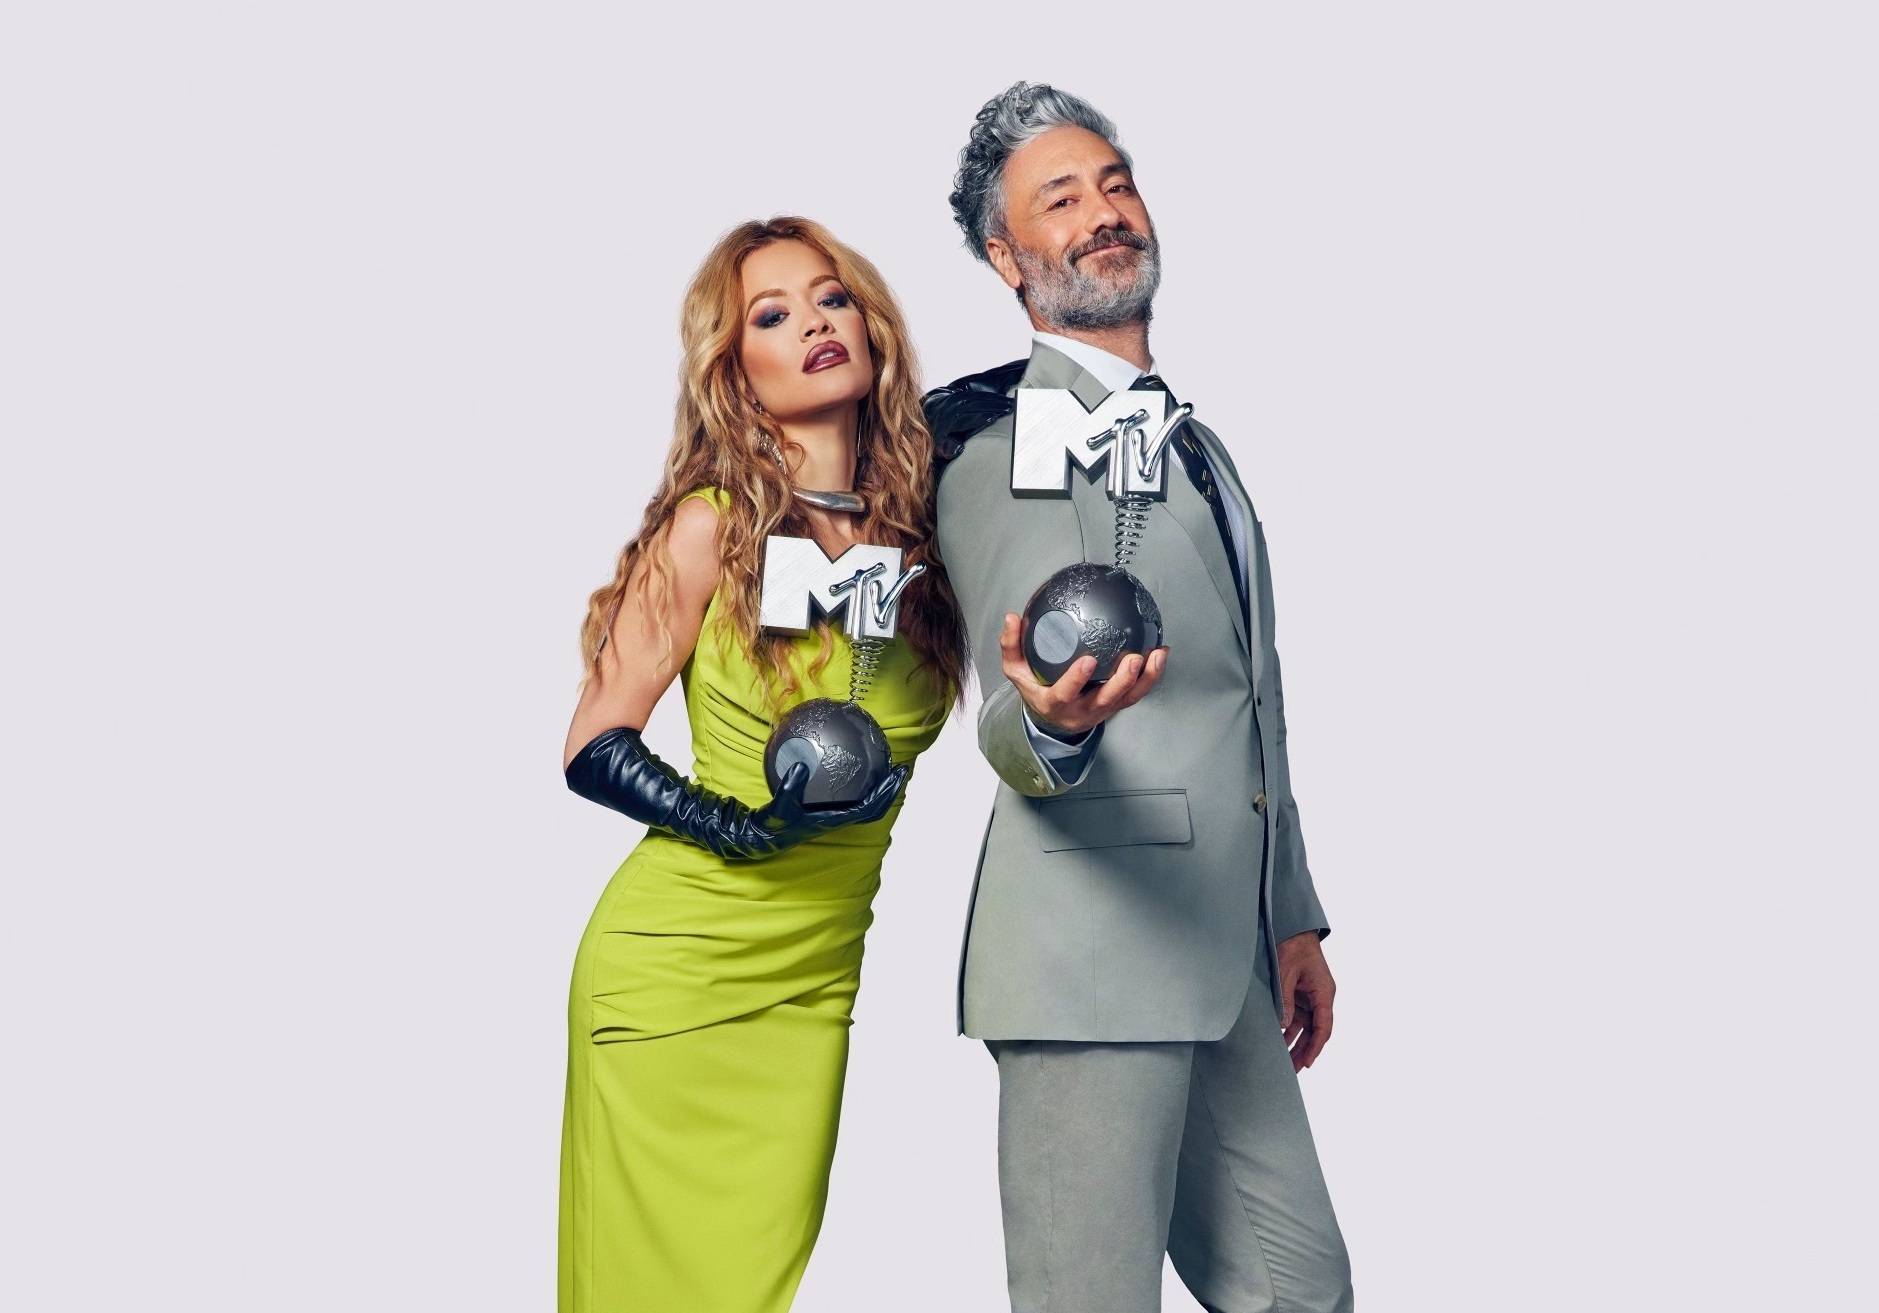 Sängerin Rita Ora und der neuseeländische SchauspielerTaika Waititi moderieren die Europäische Musik-Preisverleihung von MTV in Düsseldorf.